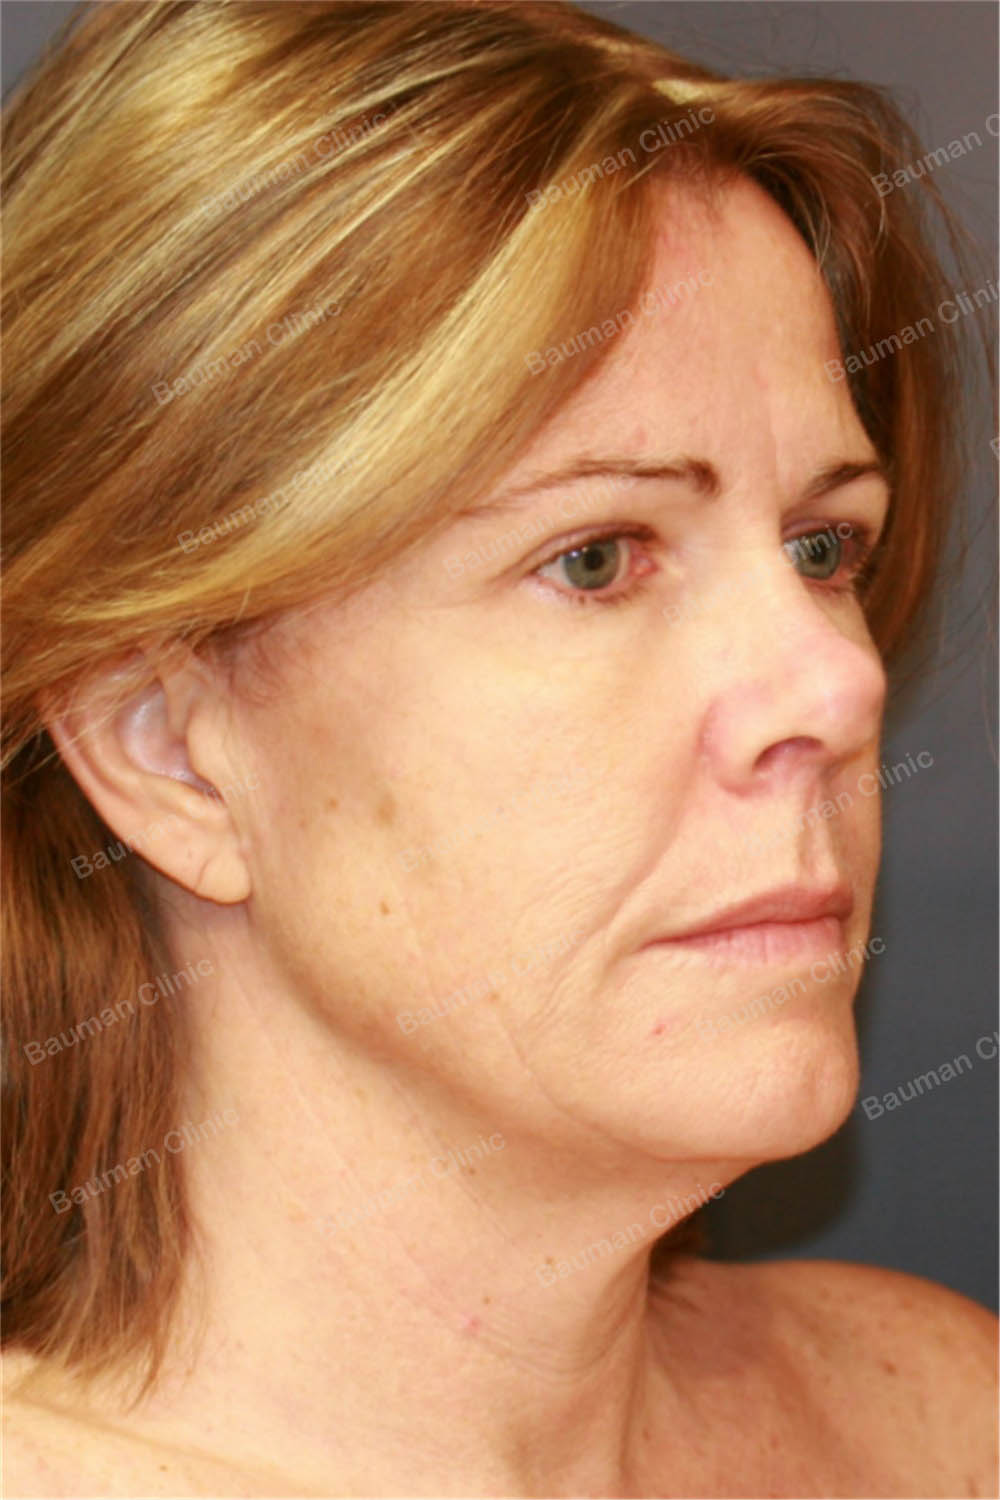 Căng da mặt, nữ 56 tuổi người Mỹ - case 5